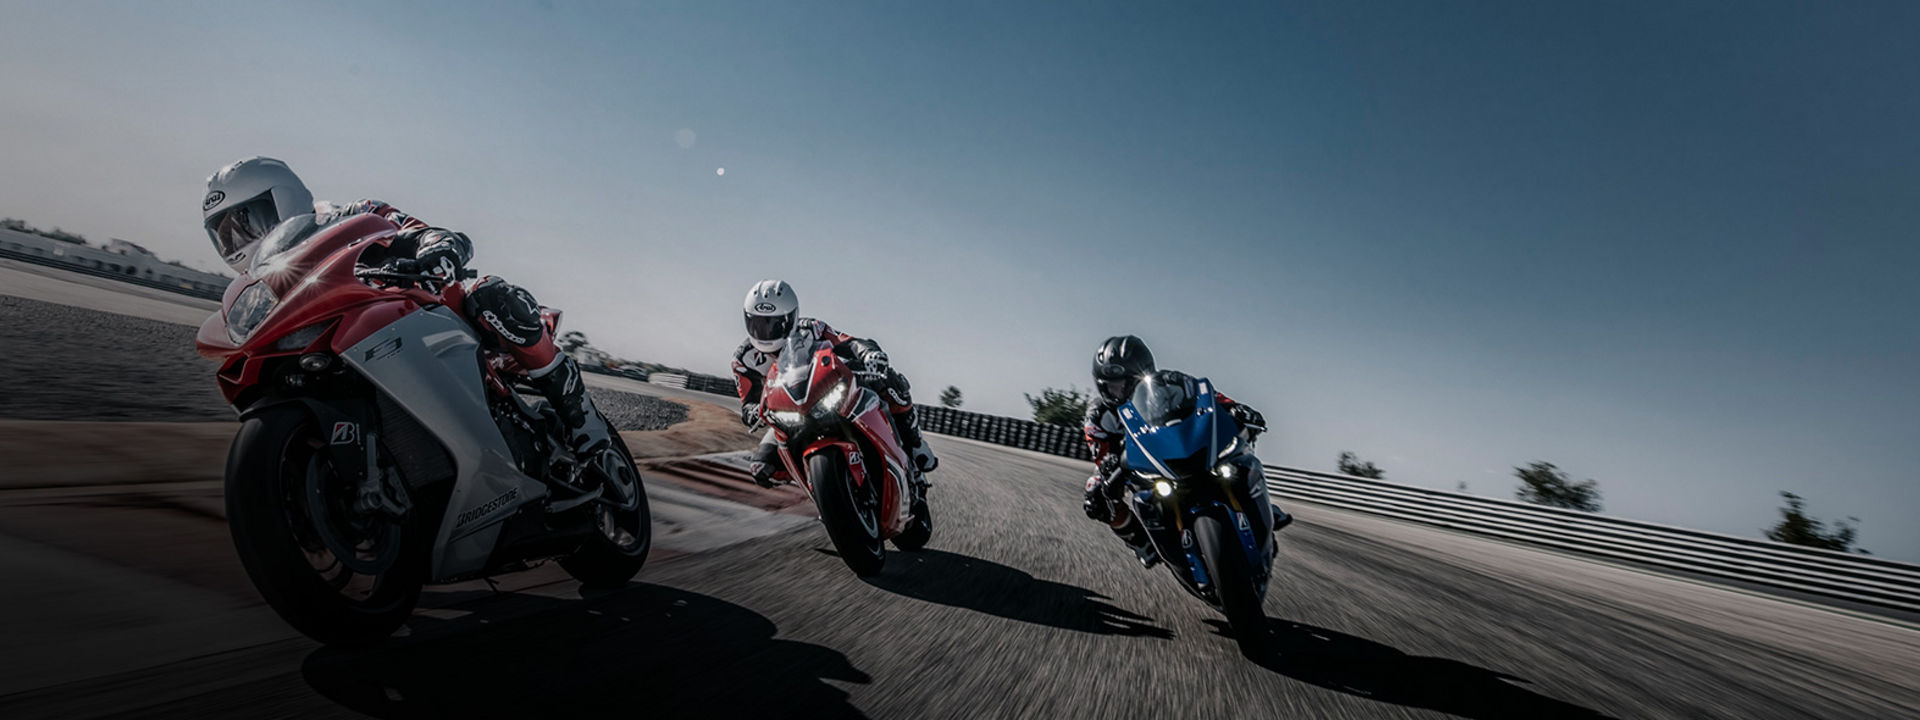 Dieses Bild zeigt drei Motorradrennfahrer, die mit Bridgestone-Reifen auf einer Rennstrecke bei hoher Geschwindigkeit um die Kurve fahren.